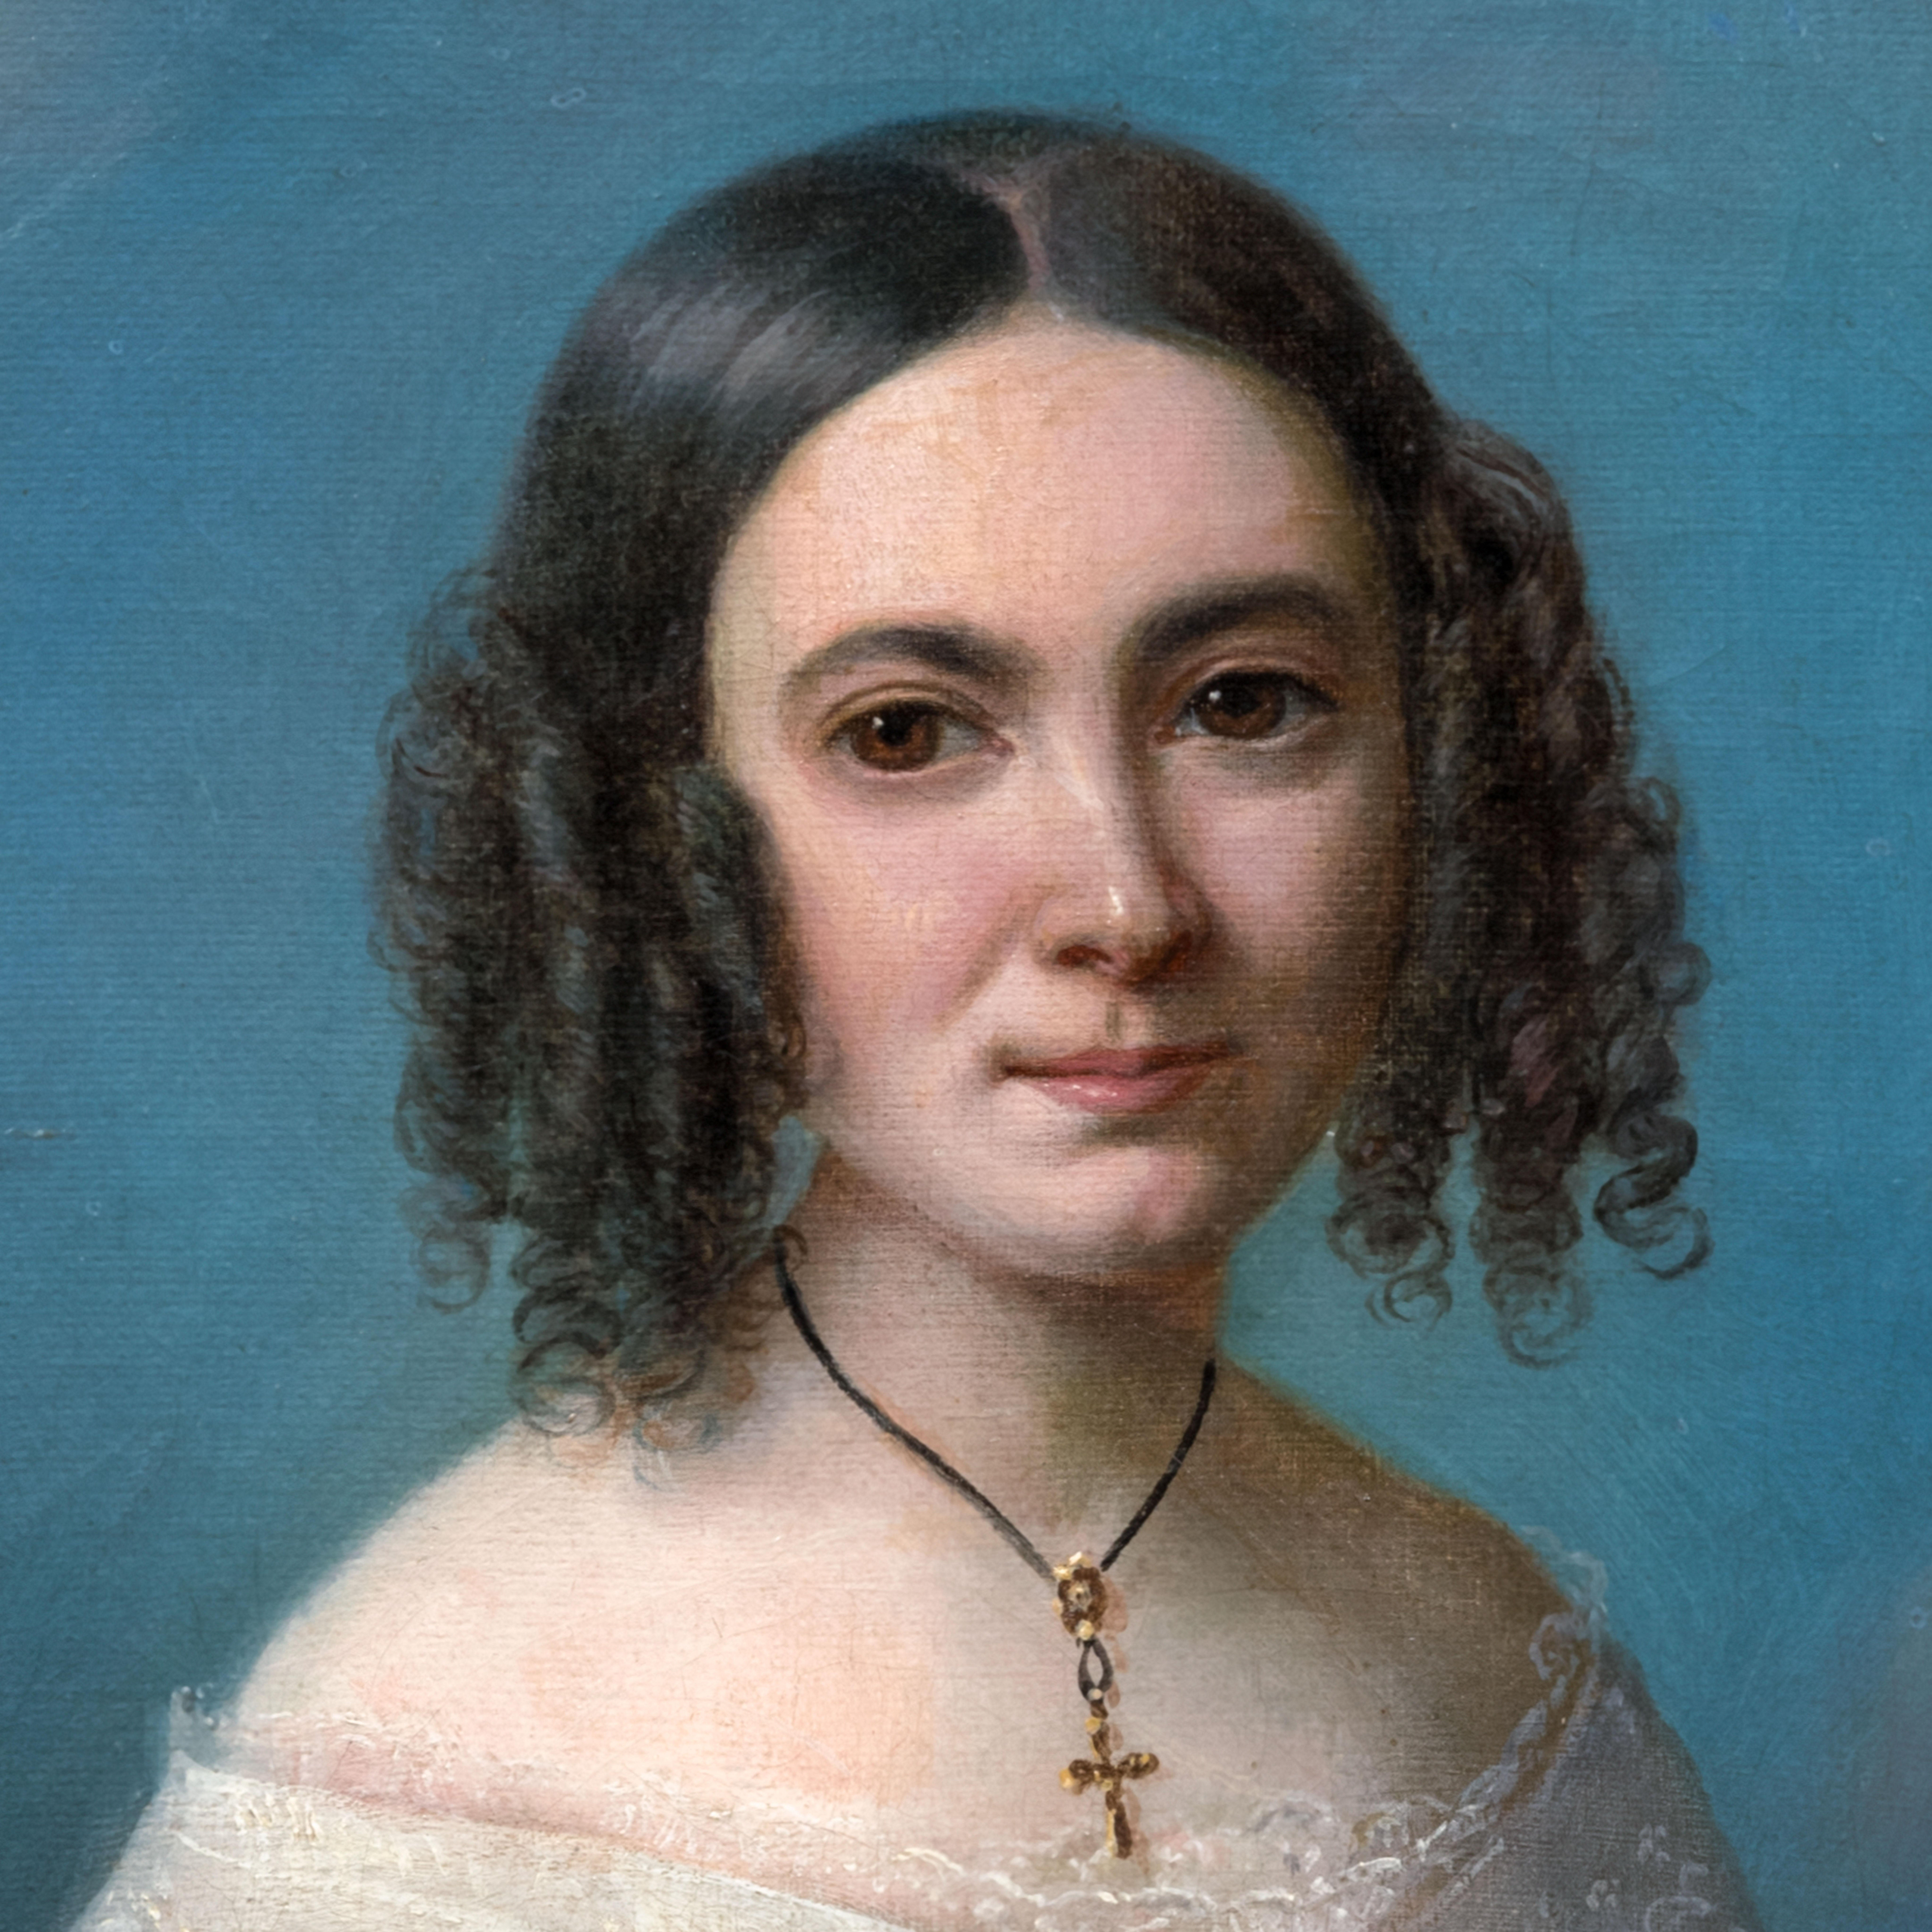 Signiertes Porträt einer jungen Dame im weißen Kleid 1840er Jahre, Ölgemälde auf Leinwand (Braun), Portrait Painting, von Heinrich Beltz